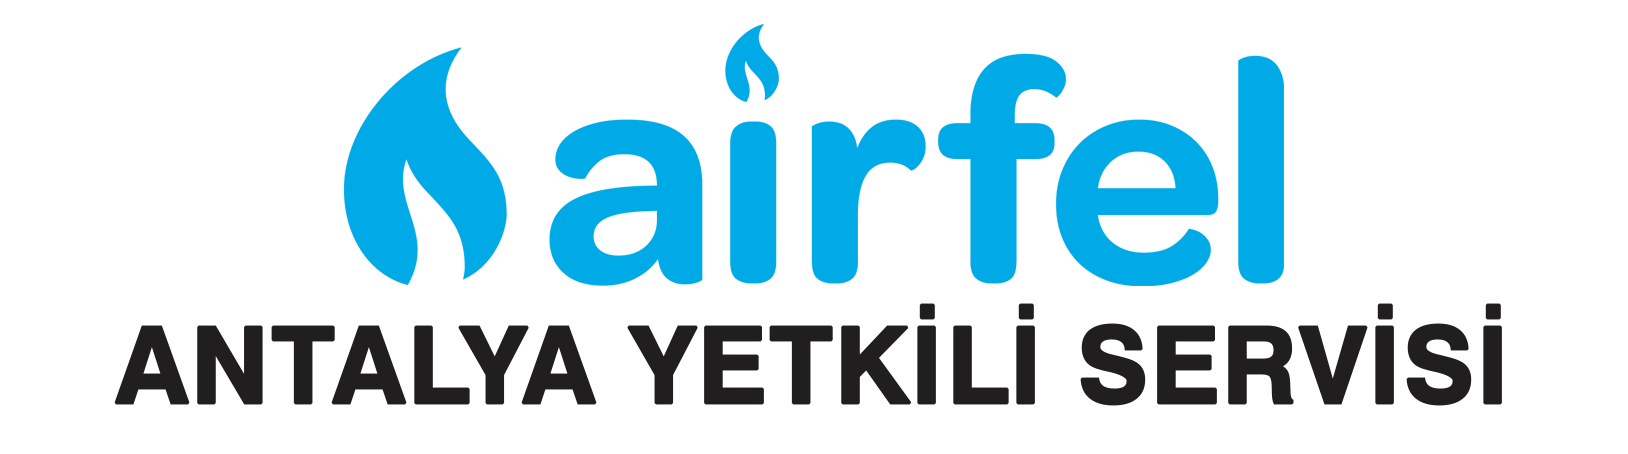 Airfel Yetkili Servisi Antalya